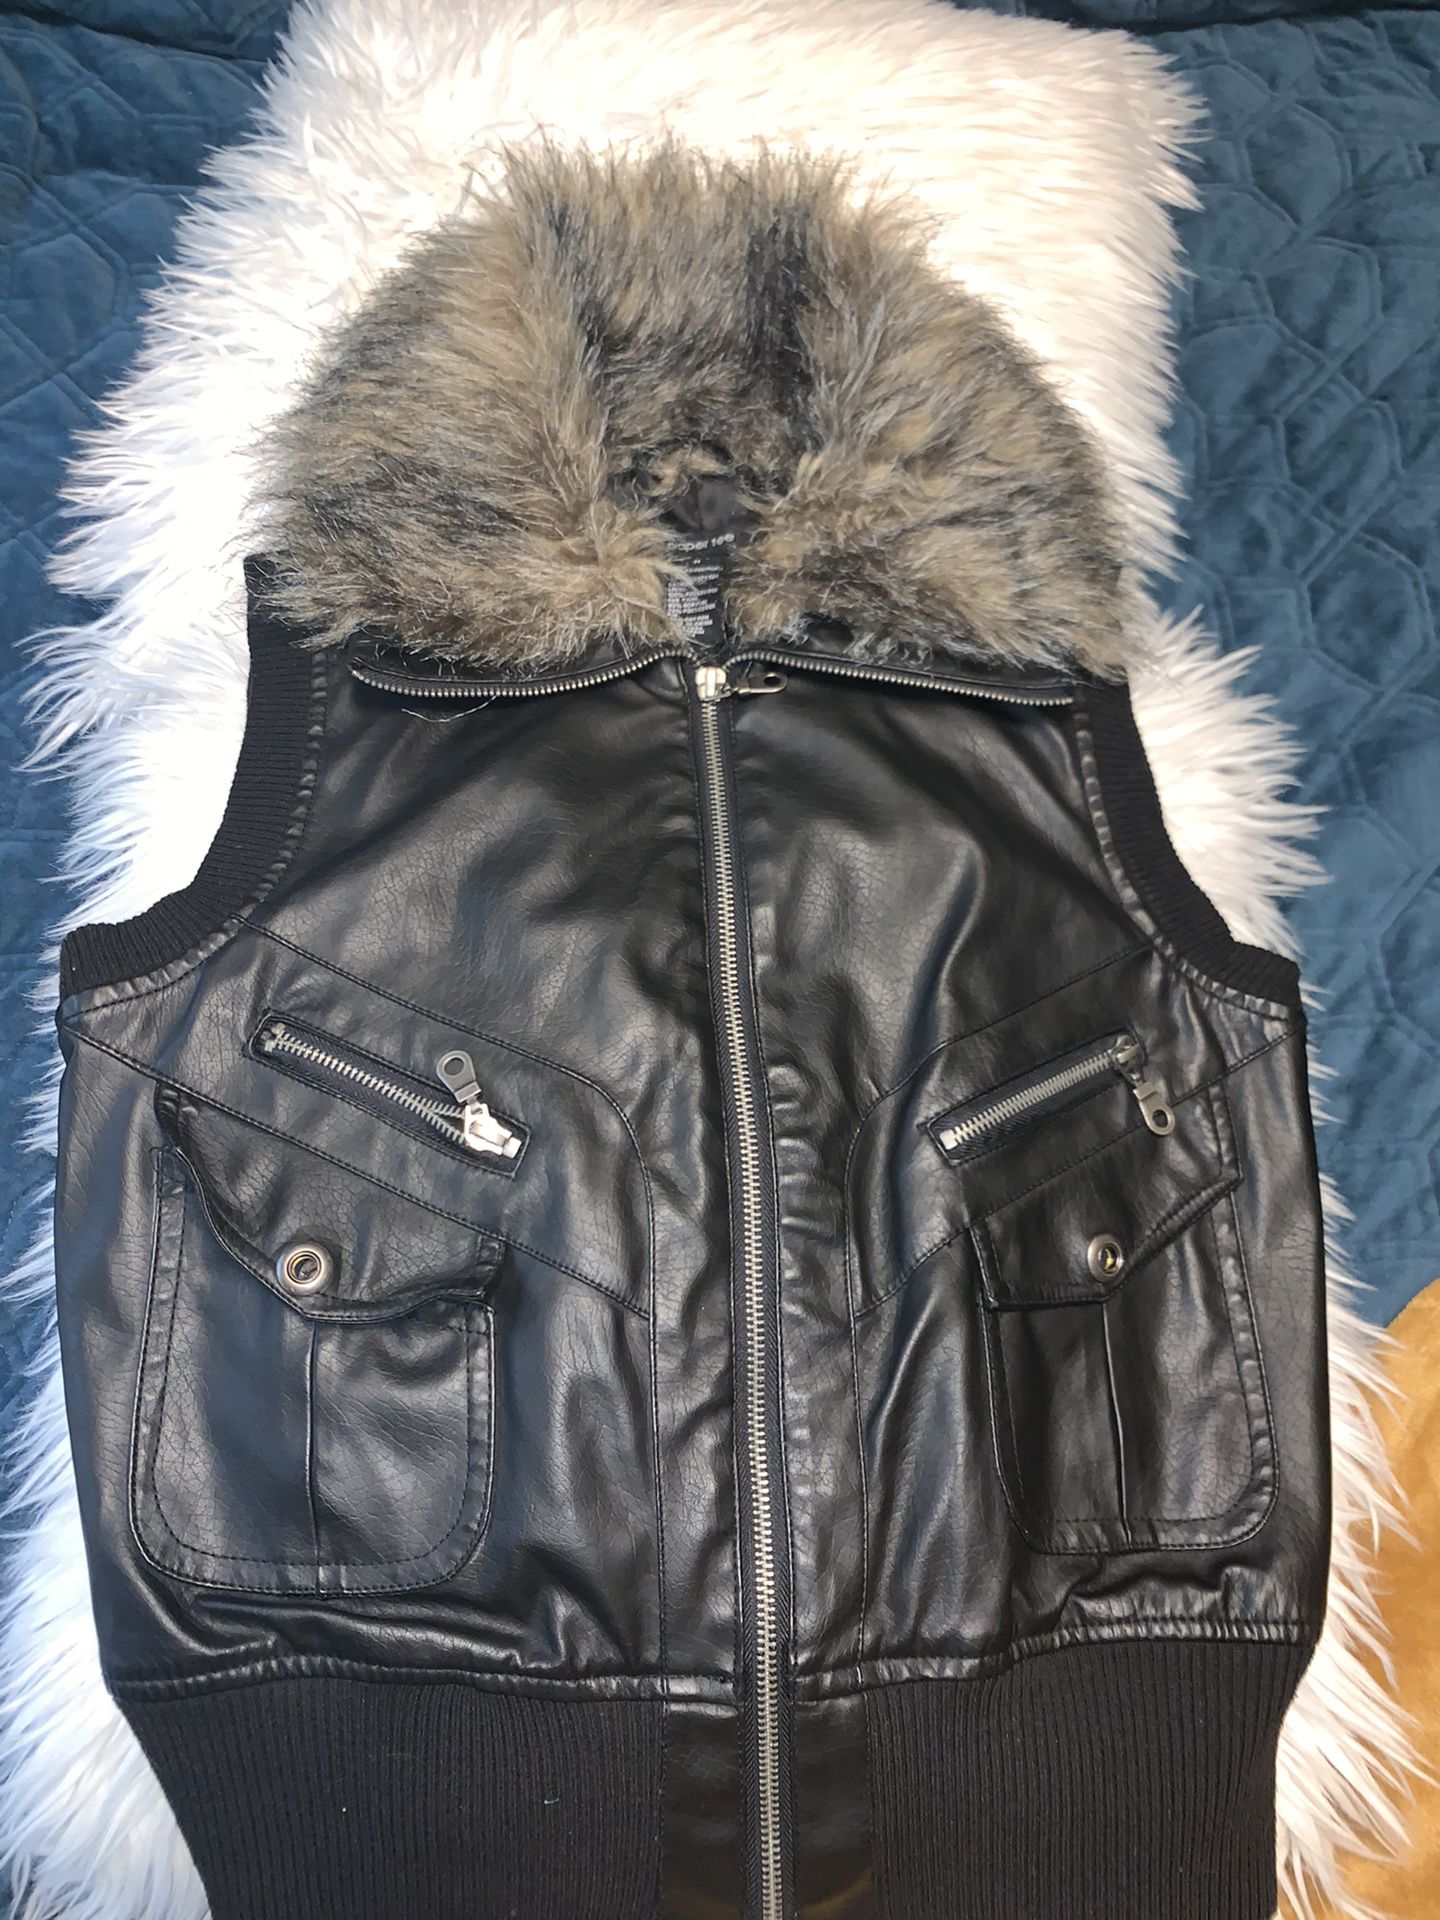 Faux leather vest New size Medium